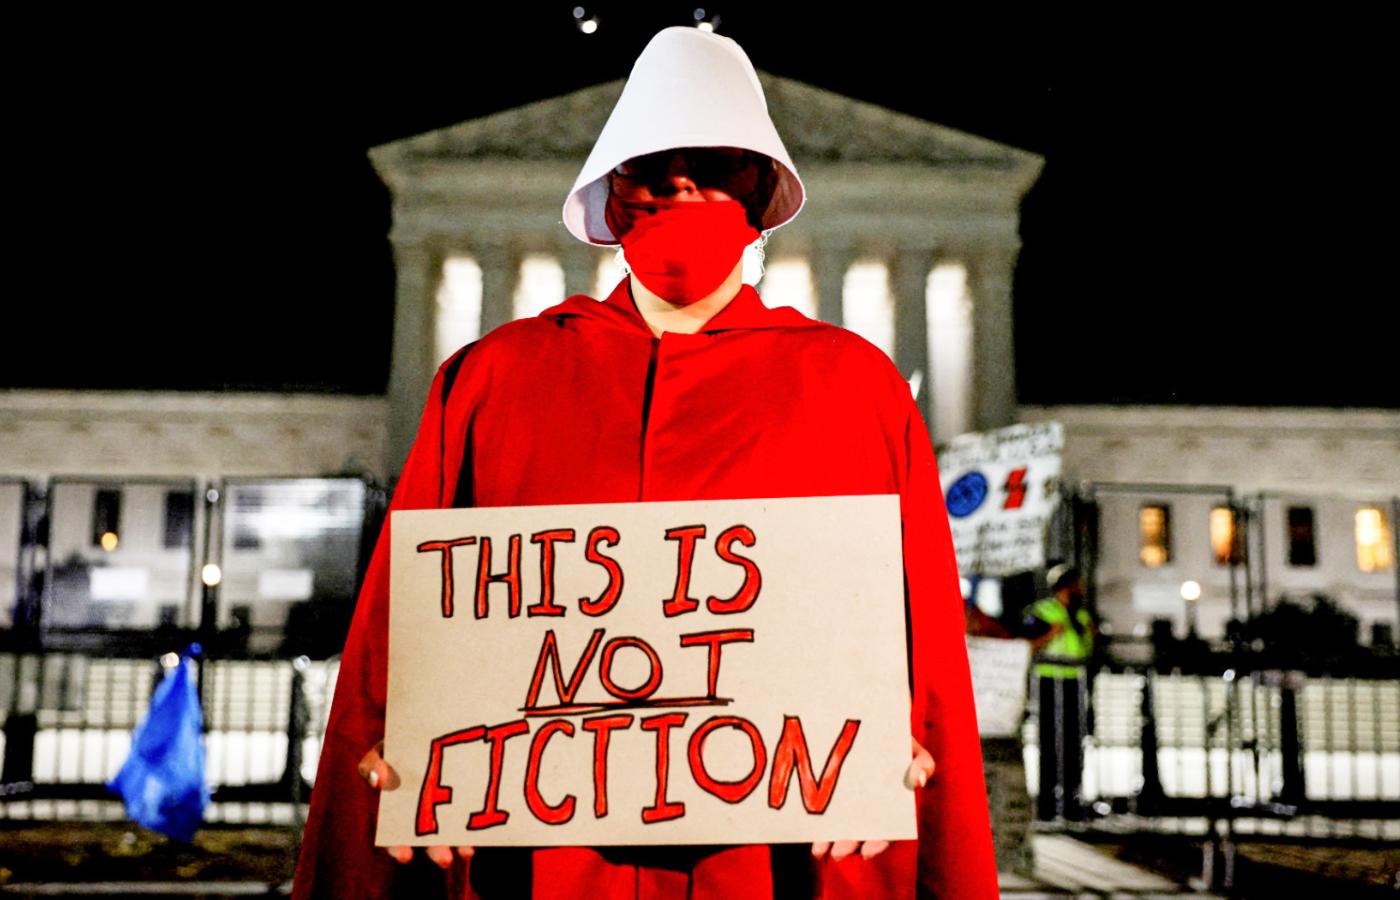 Waszyngton. Protest po wyroku Sądu Najwyższego ws. aborcji